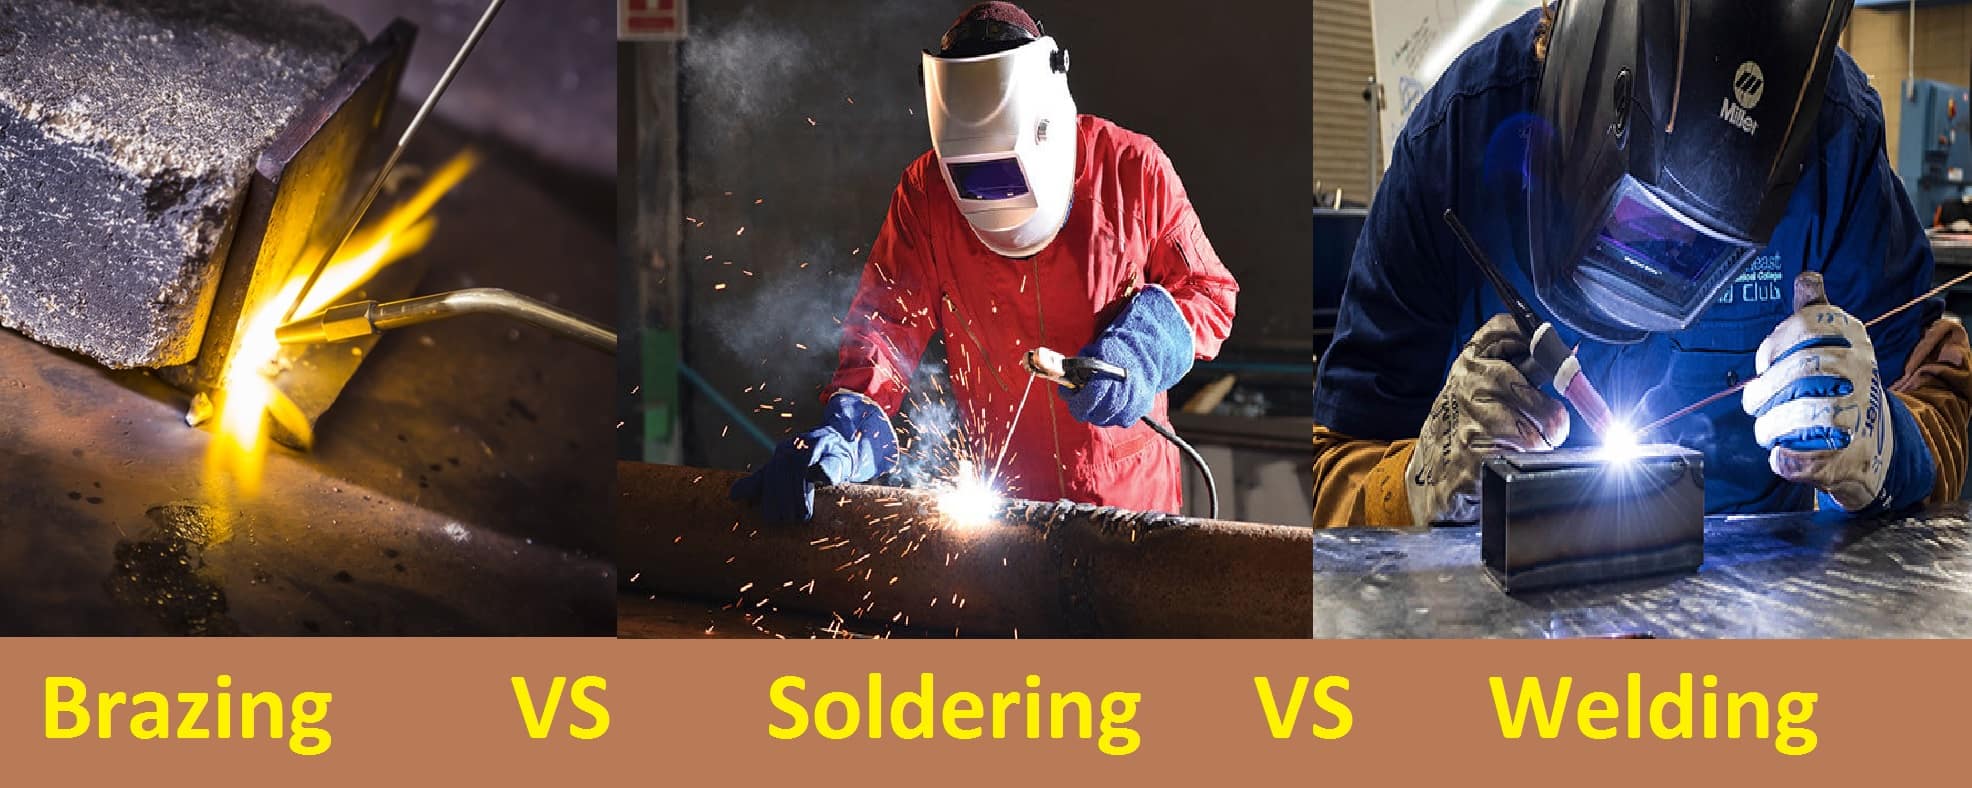 Brazing VS Soldering VS Welding